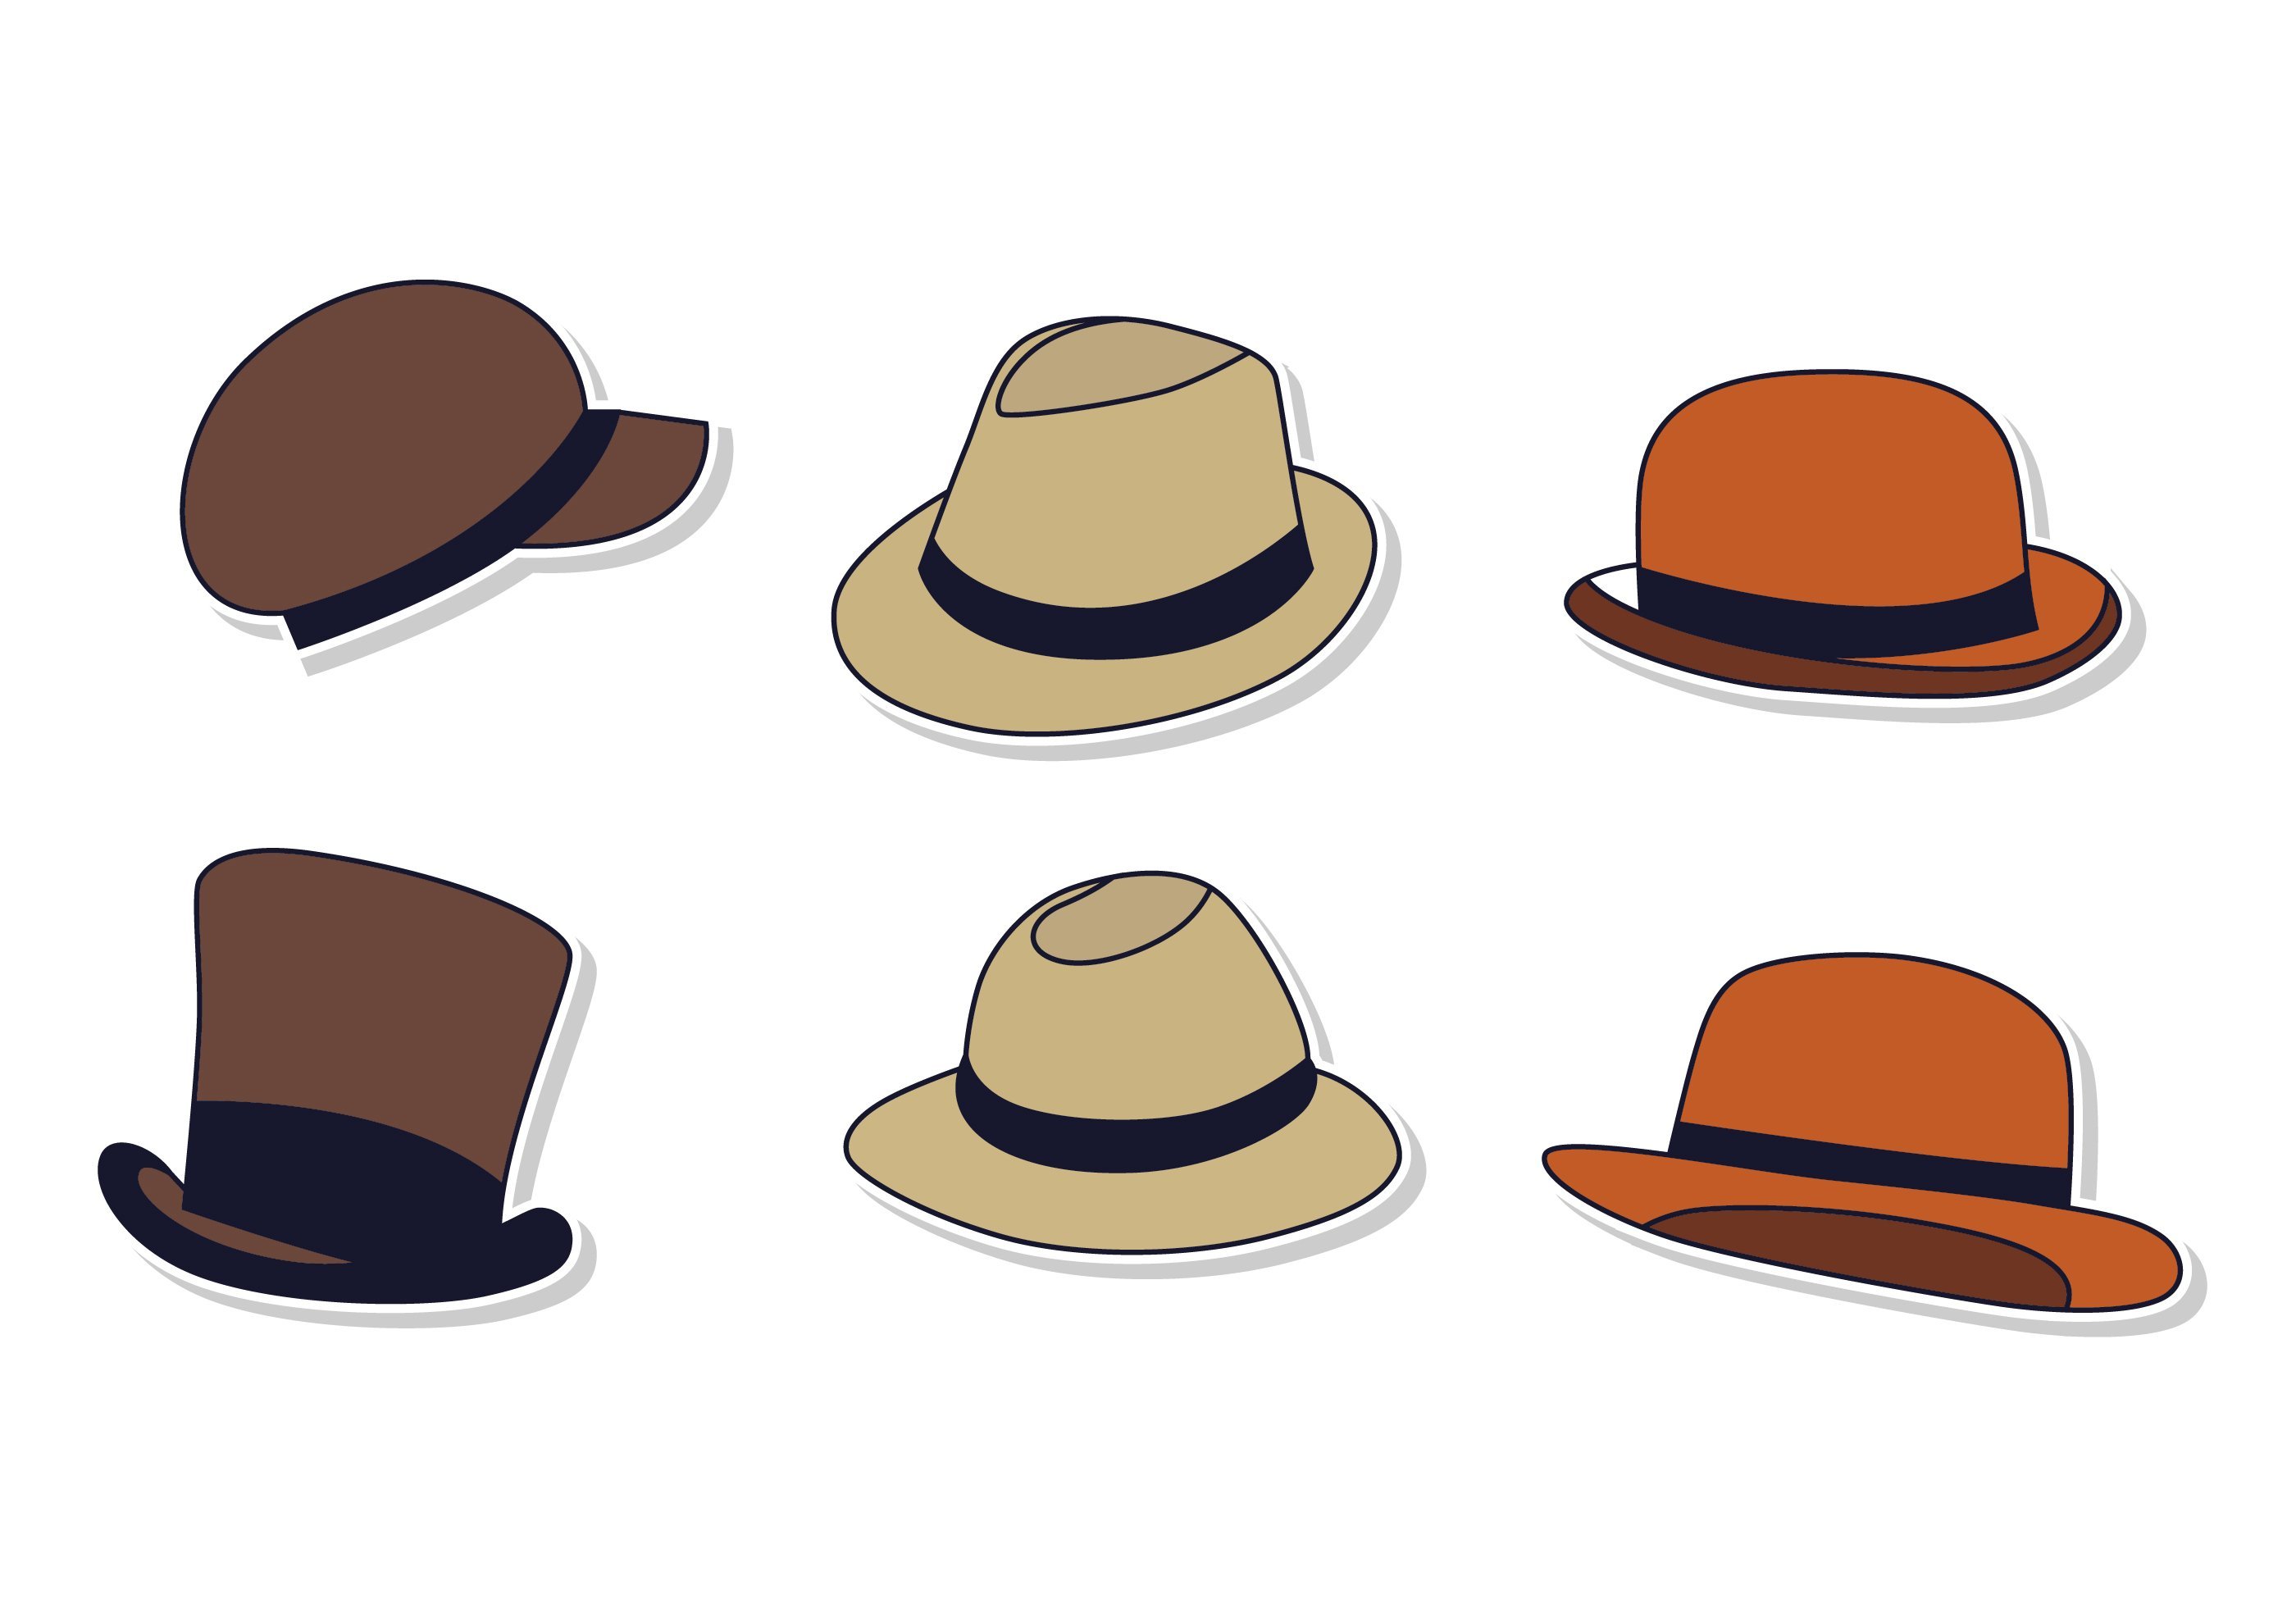 Hat keinen. Мультяшные шляпки. Шляпа рисунок. Шляпа с разных ракурсов. Шляпа для рисования.